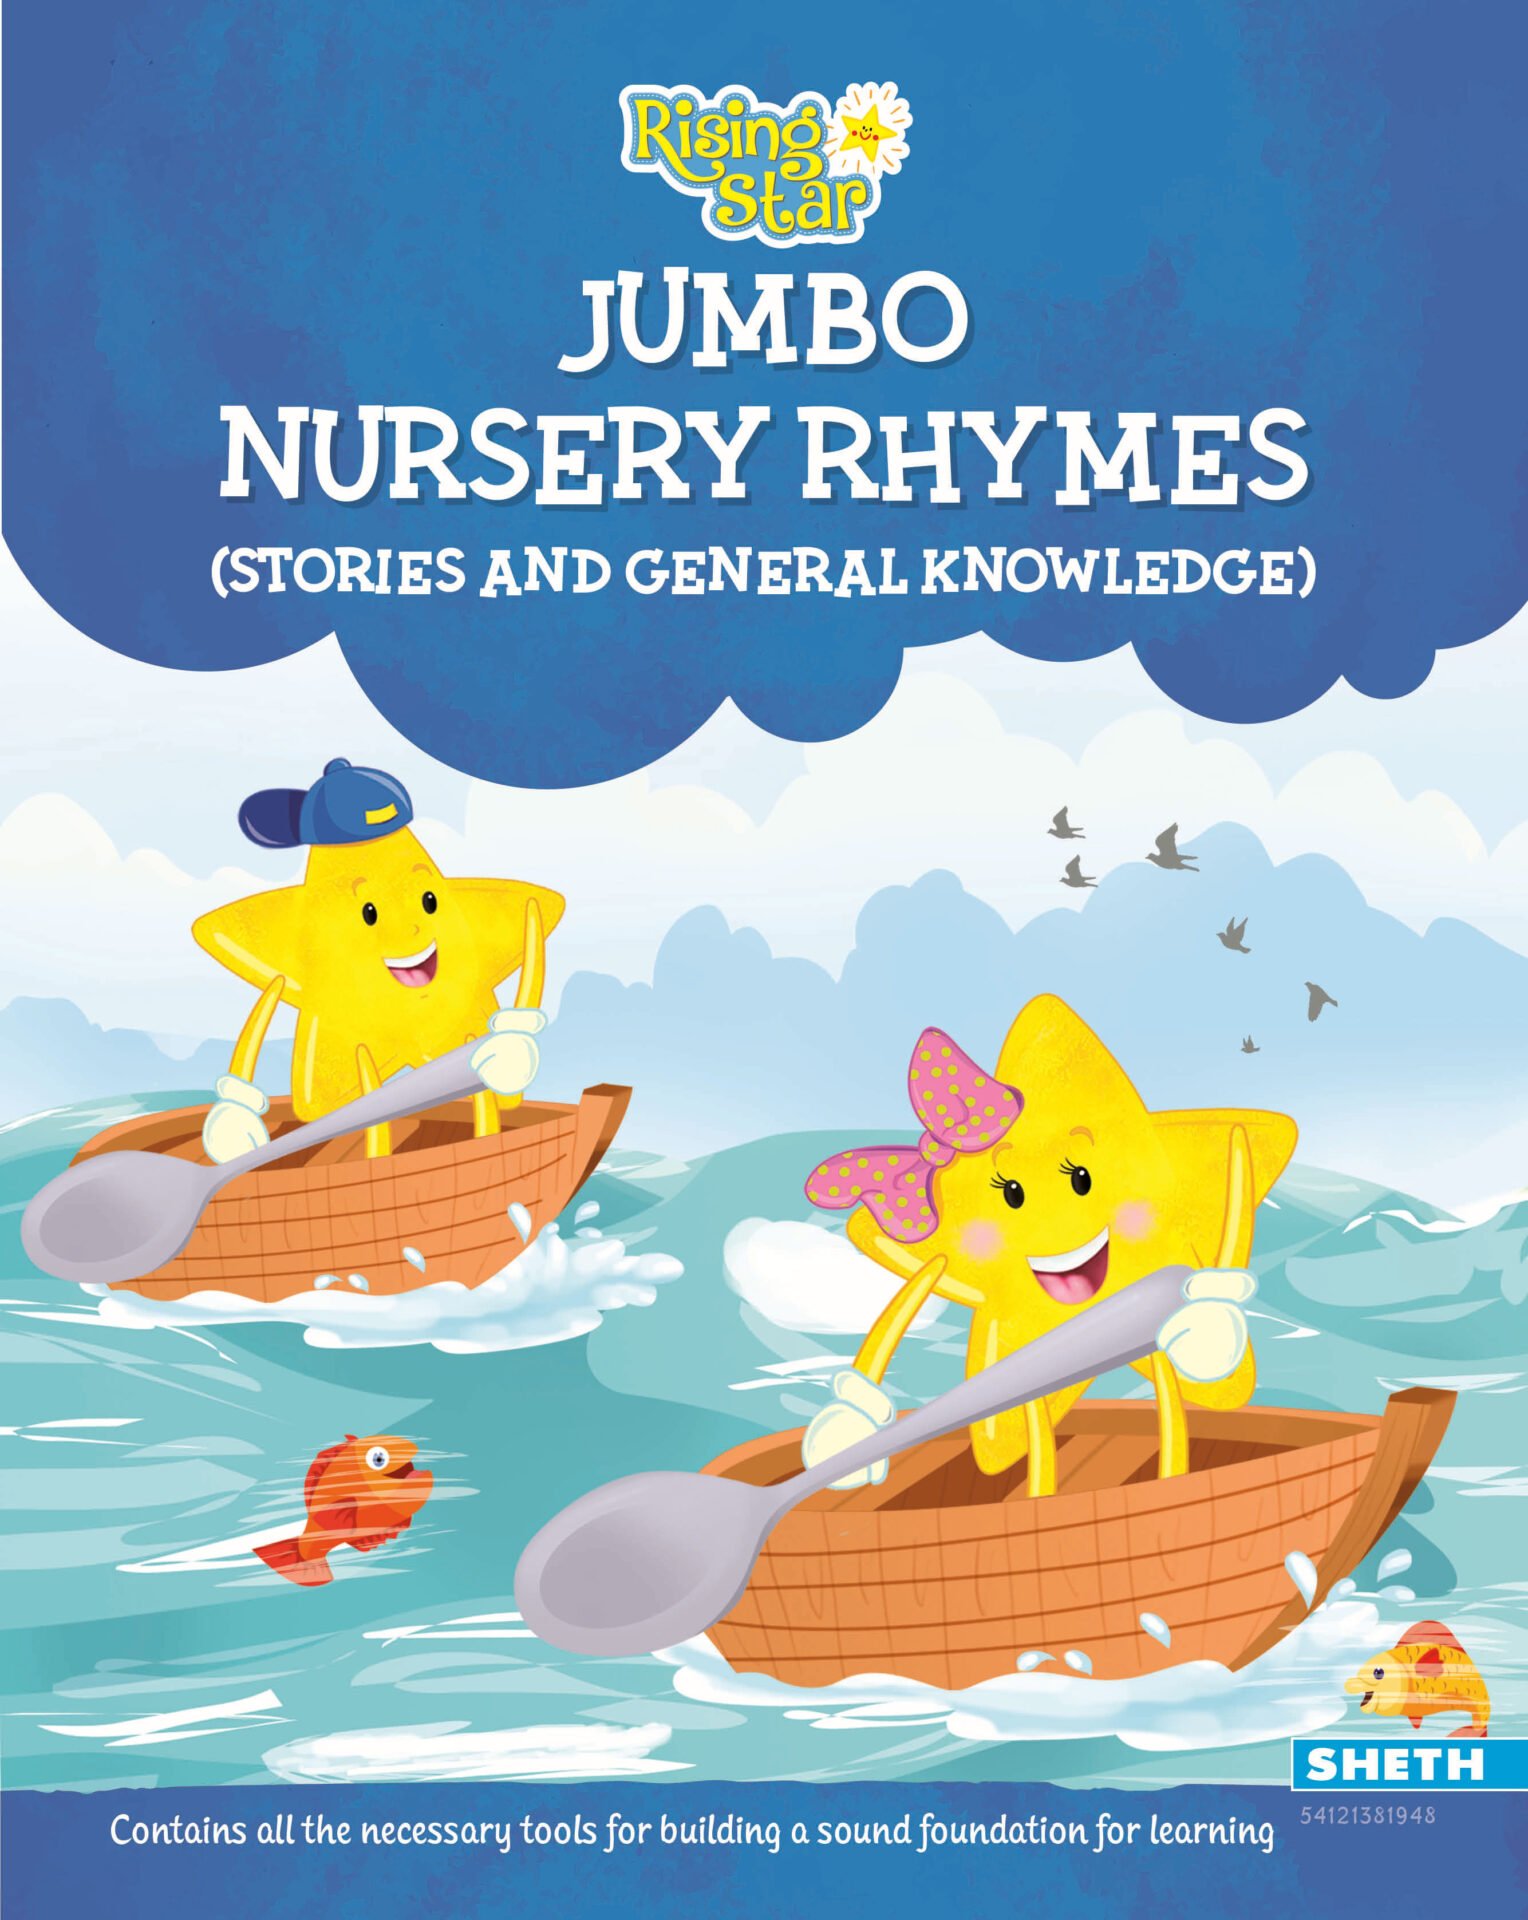 Rising Star Jumbo Nursery Rhymes 1 1